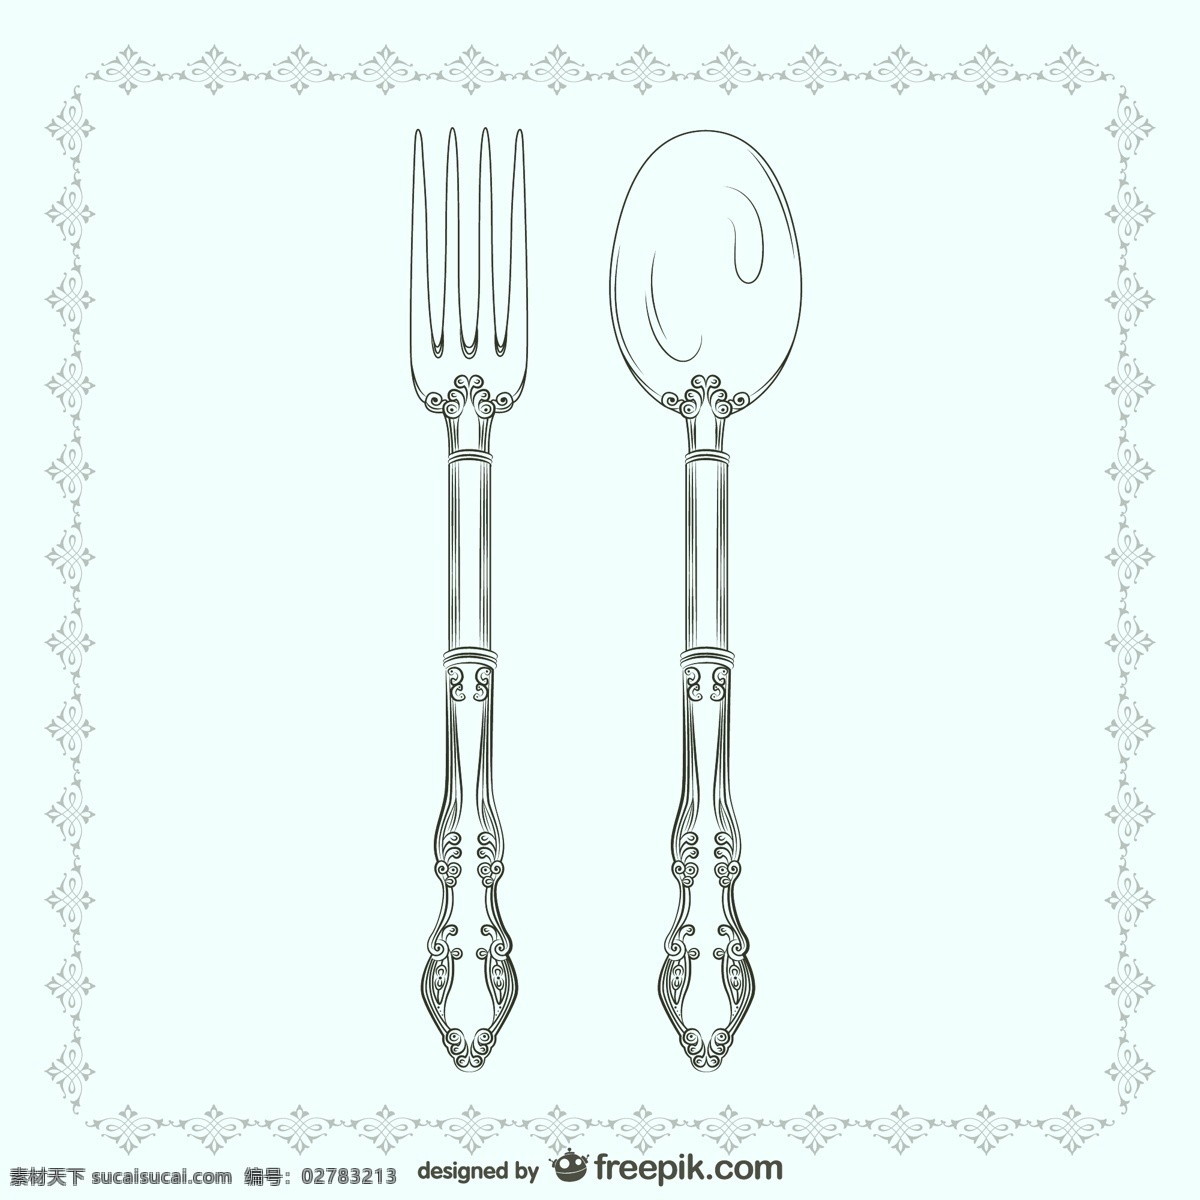 刀叉勺子 餐具 西式餐具 西餐餐具 高档餐具 刀 叉 刀叉 勺子 时尚背景 背景底纹 底纹边框